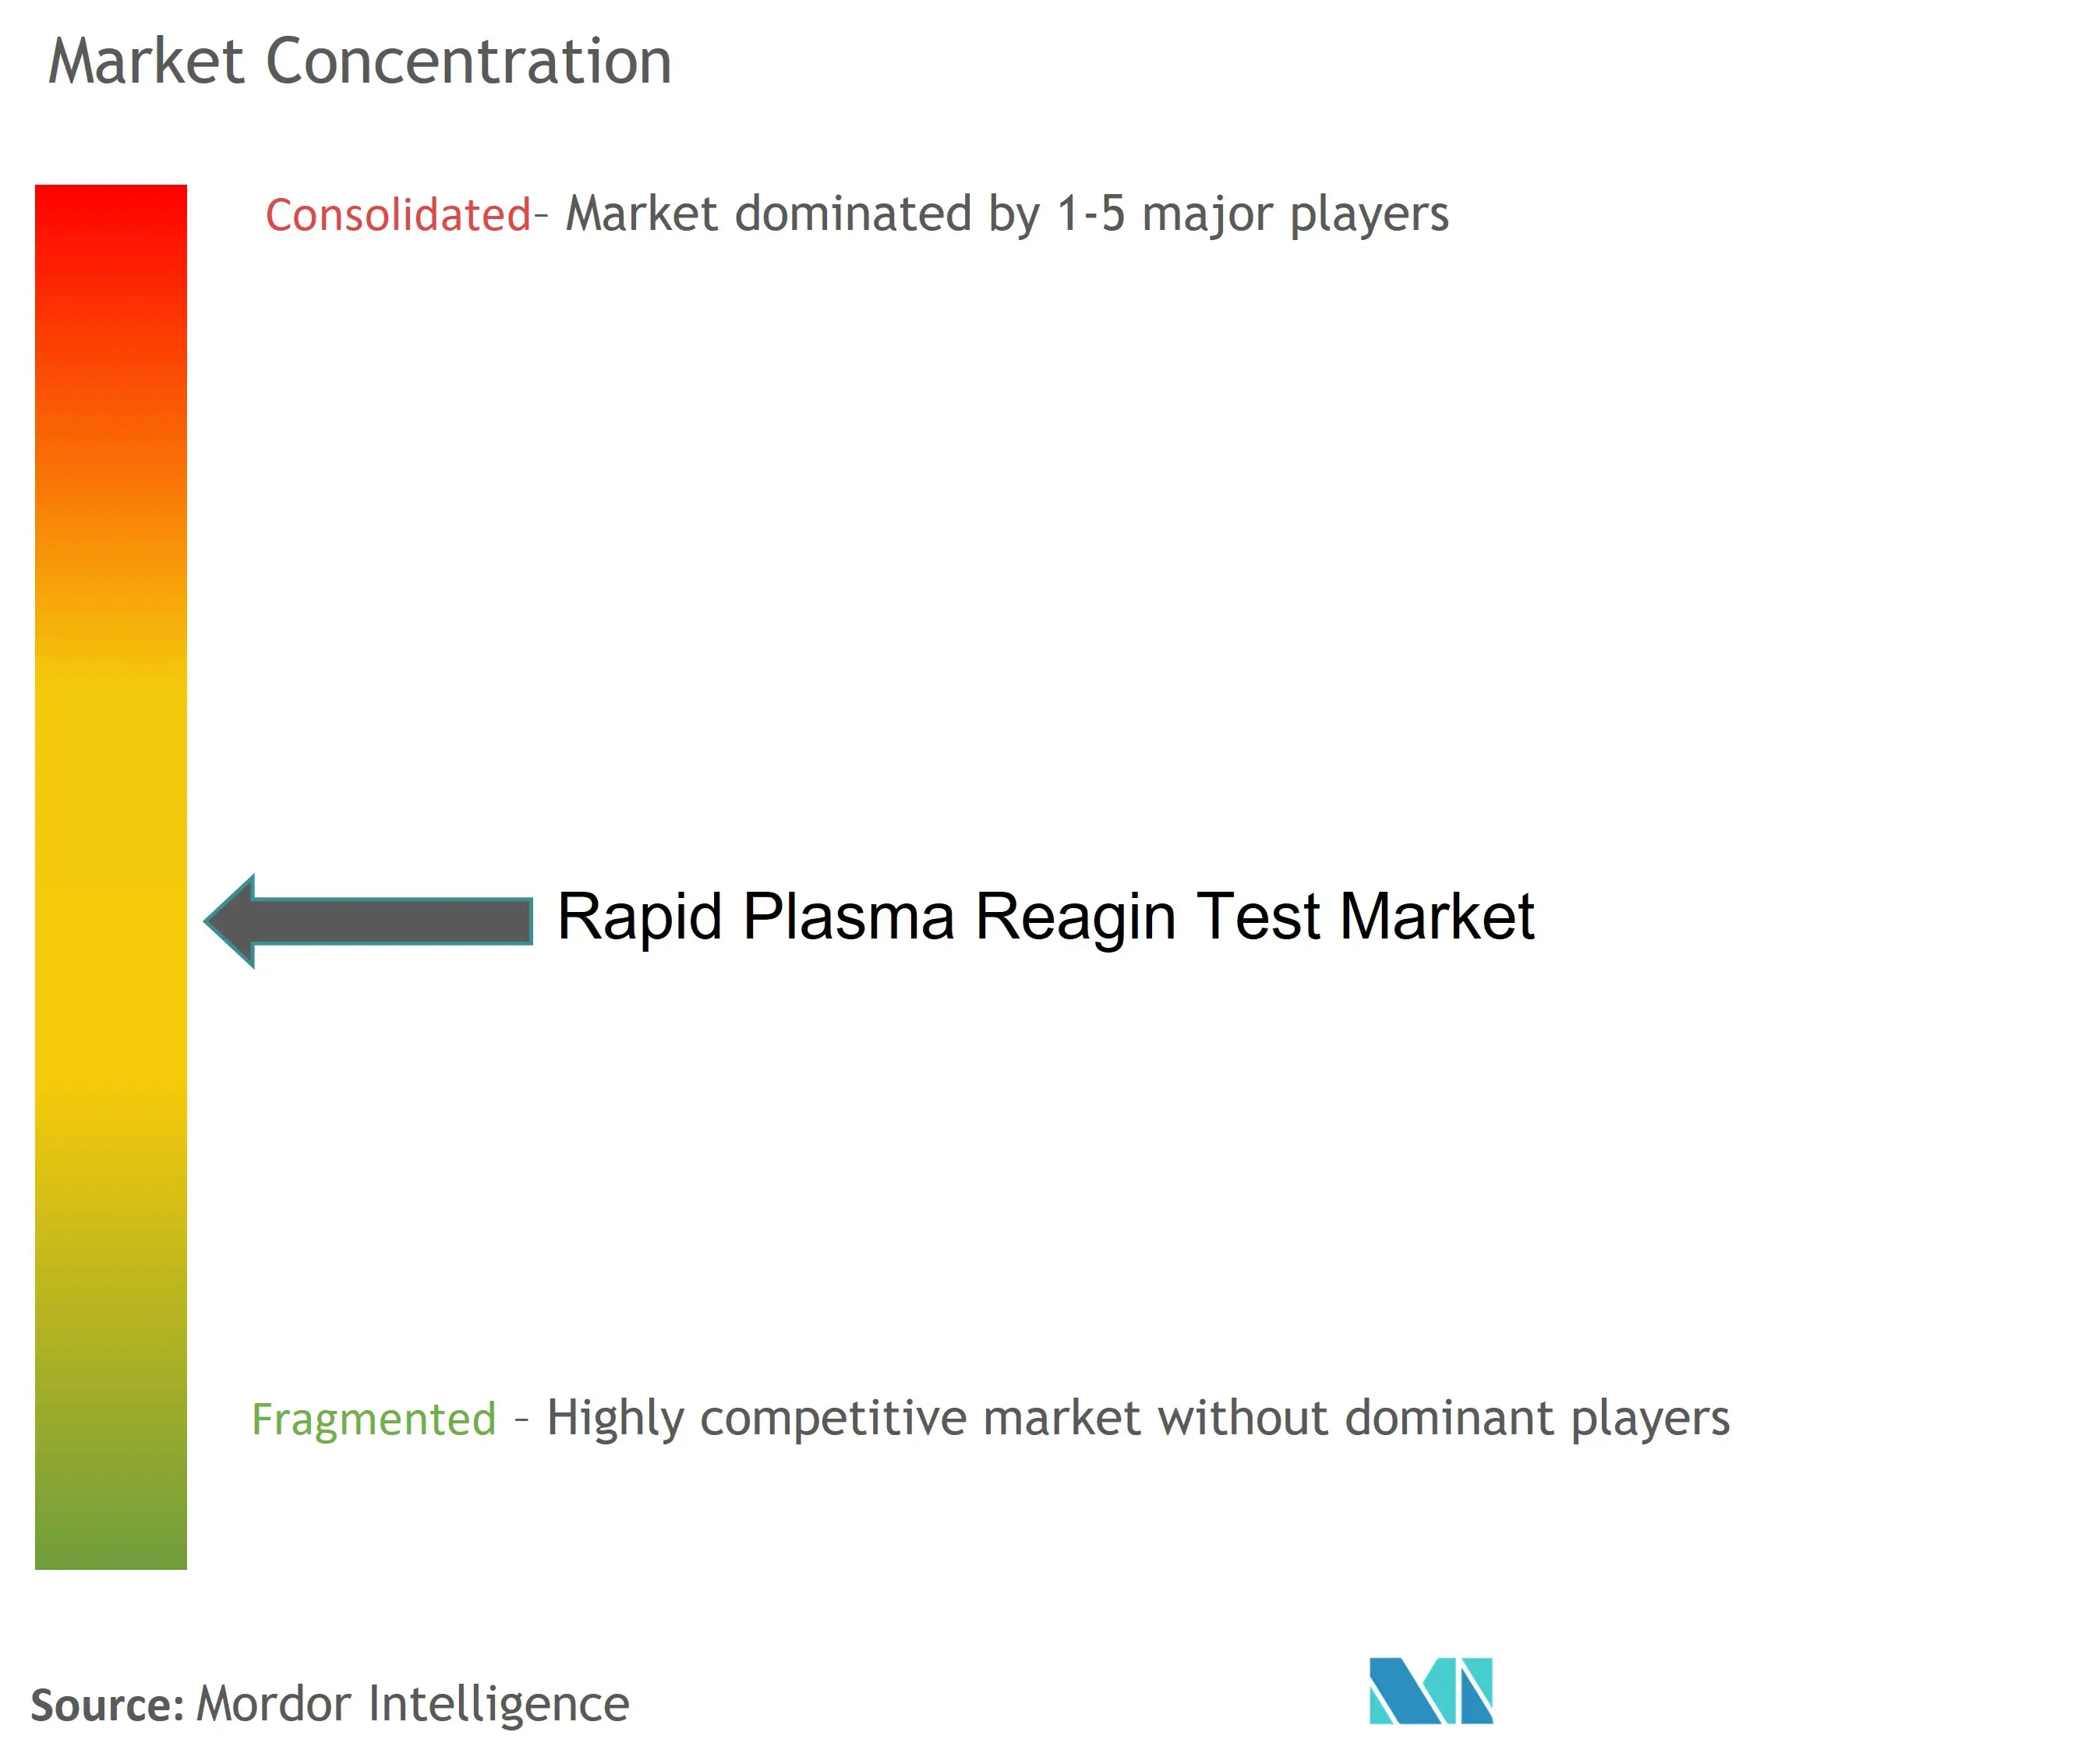 Marktkonzentration für schnelle Plasma-Reagin-Tests